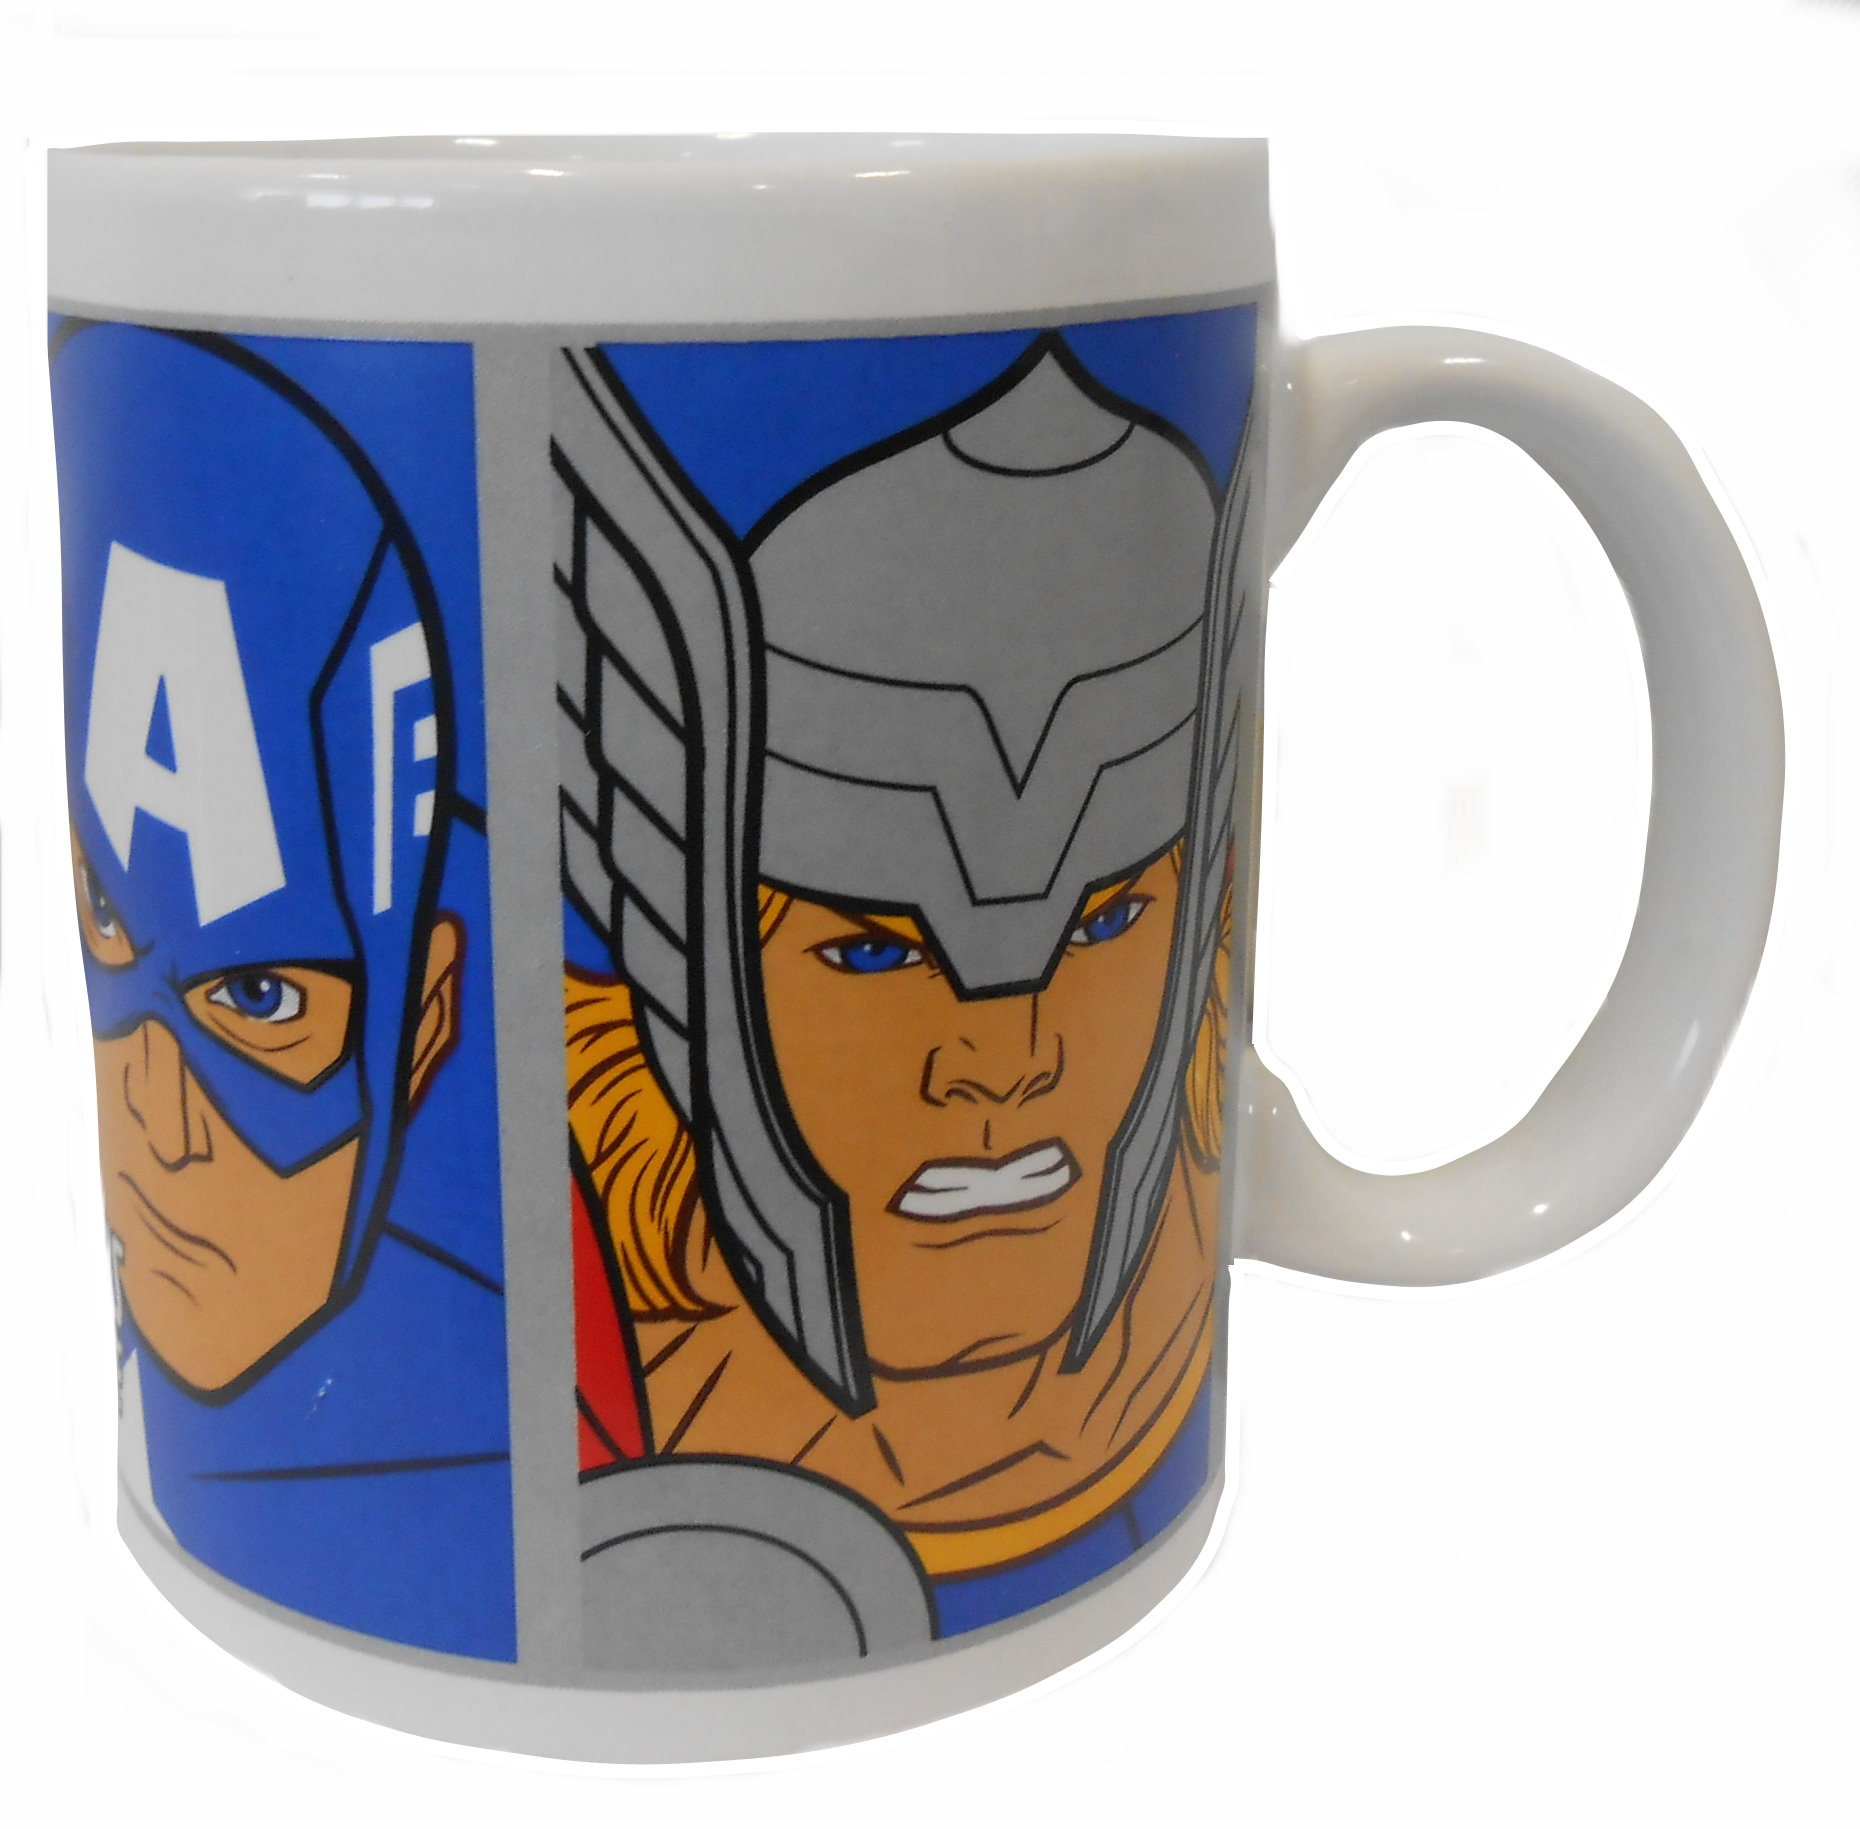 Marvel Avengers Mug 10190_BLUE b.JPG  by Thingimijigs